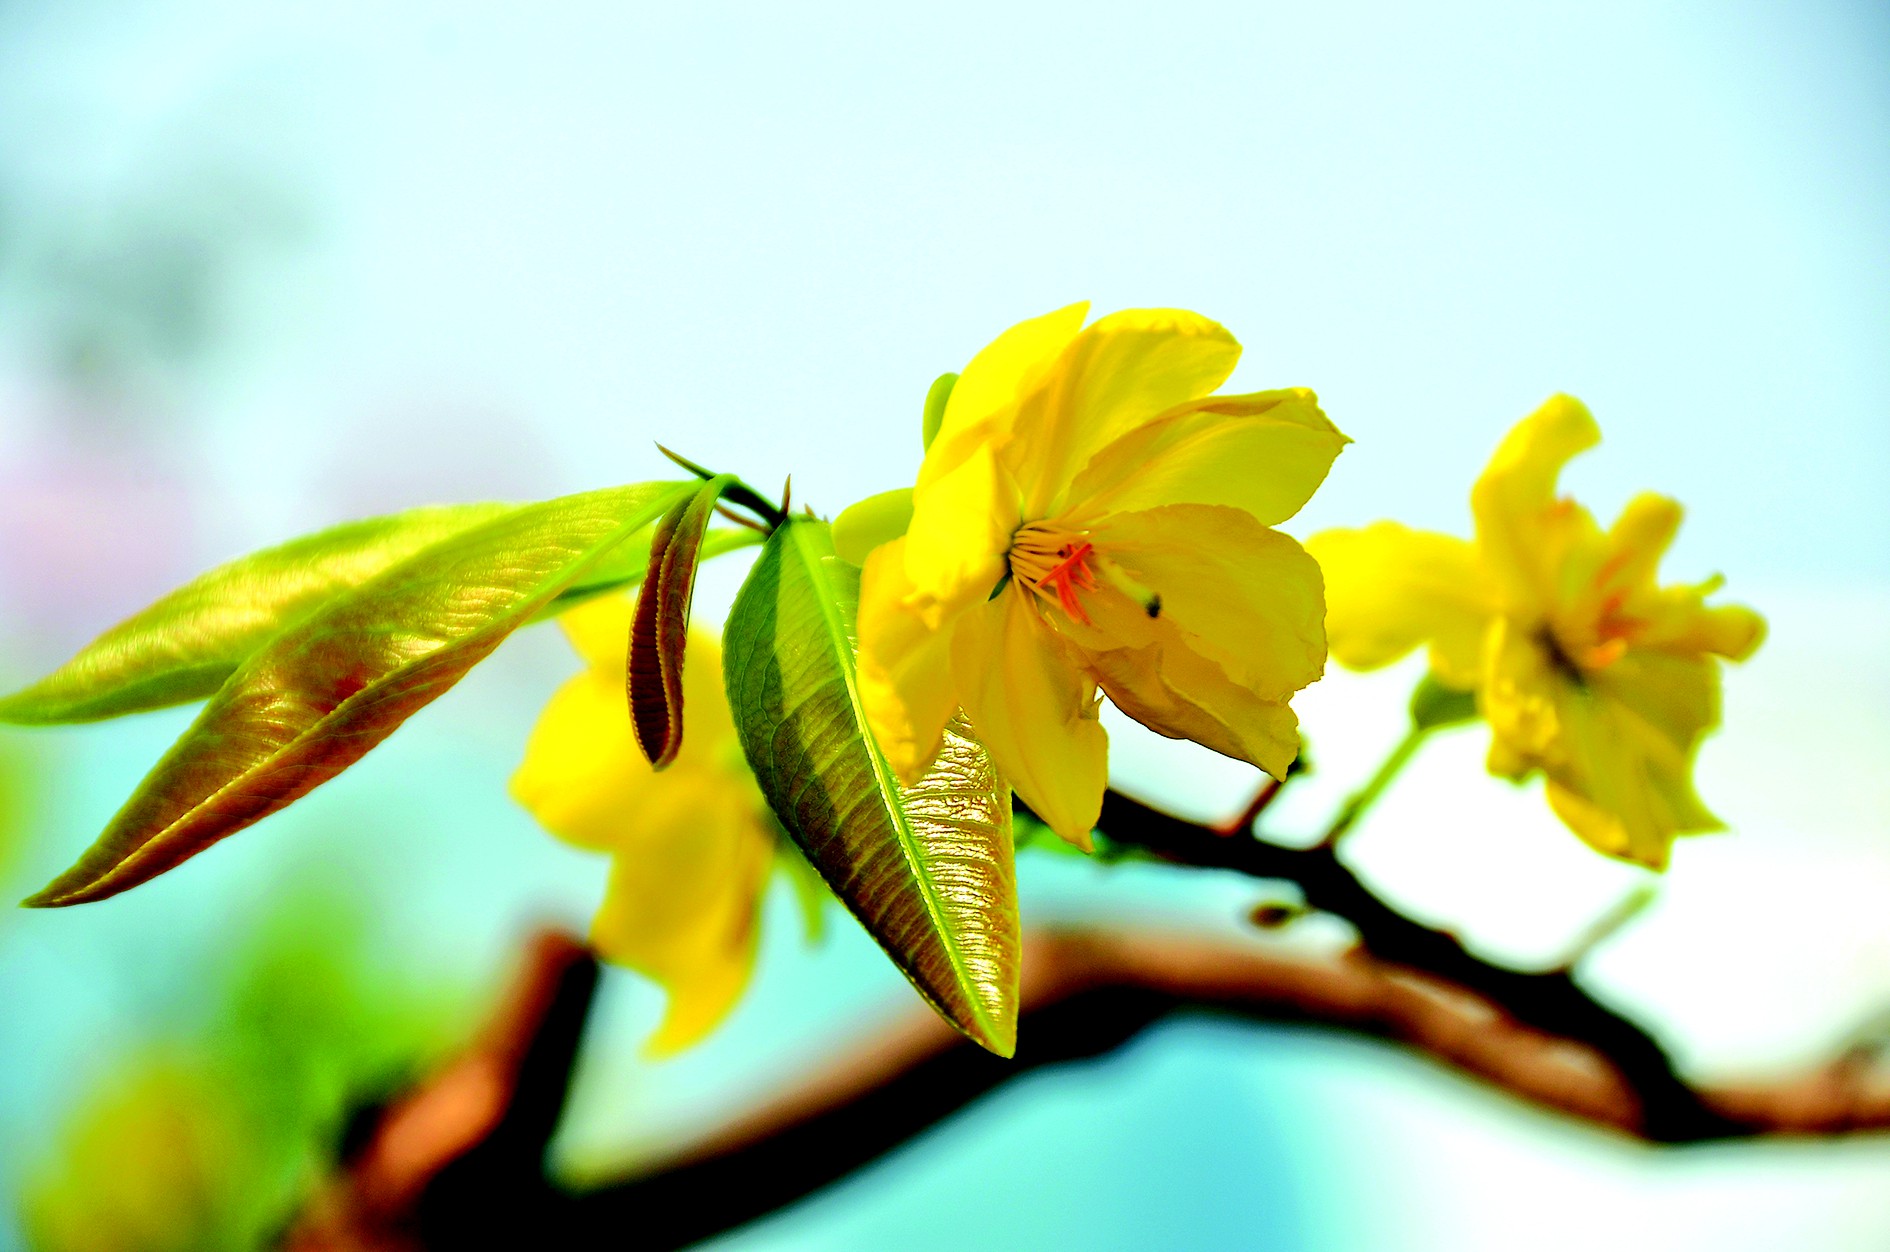 Bộ sưu tập những hình ảnh hoa đào ngày xuân đẹp nhất giúp bạn cảm nhận  không khí tết đang về phần 2  Đài phát thanh và truyền hình Vĩnh Phúc